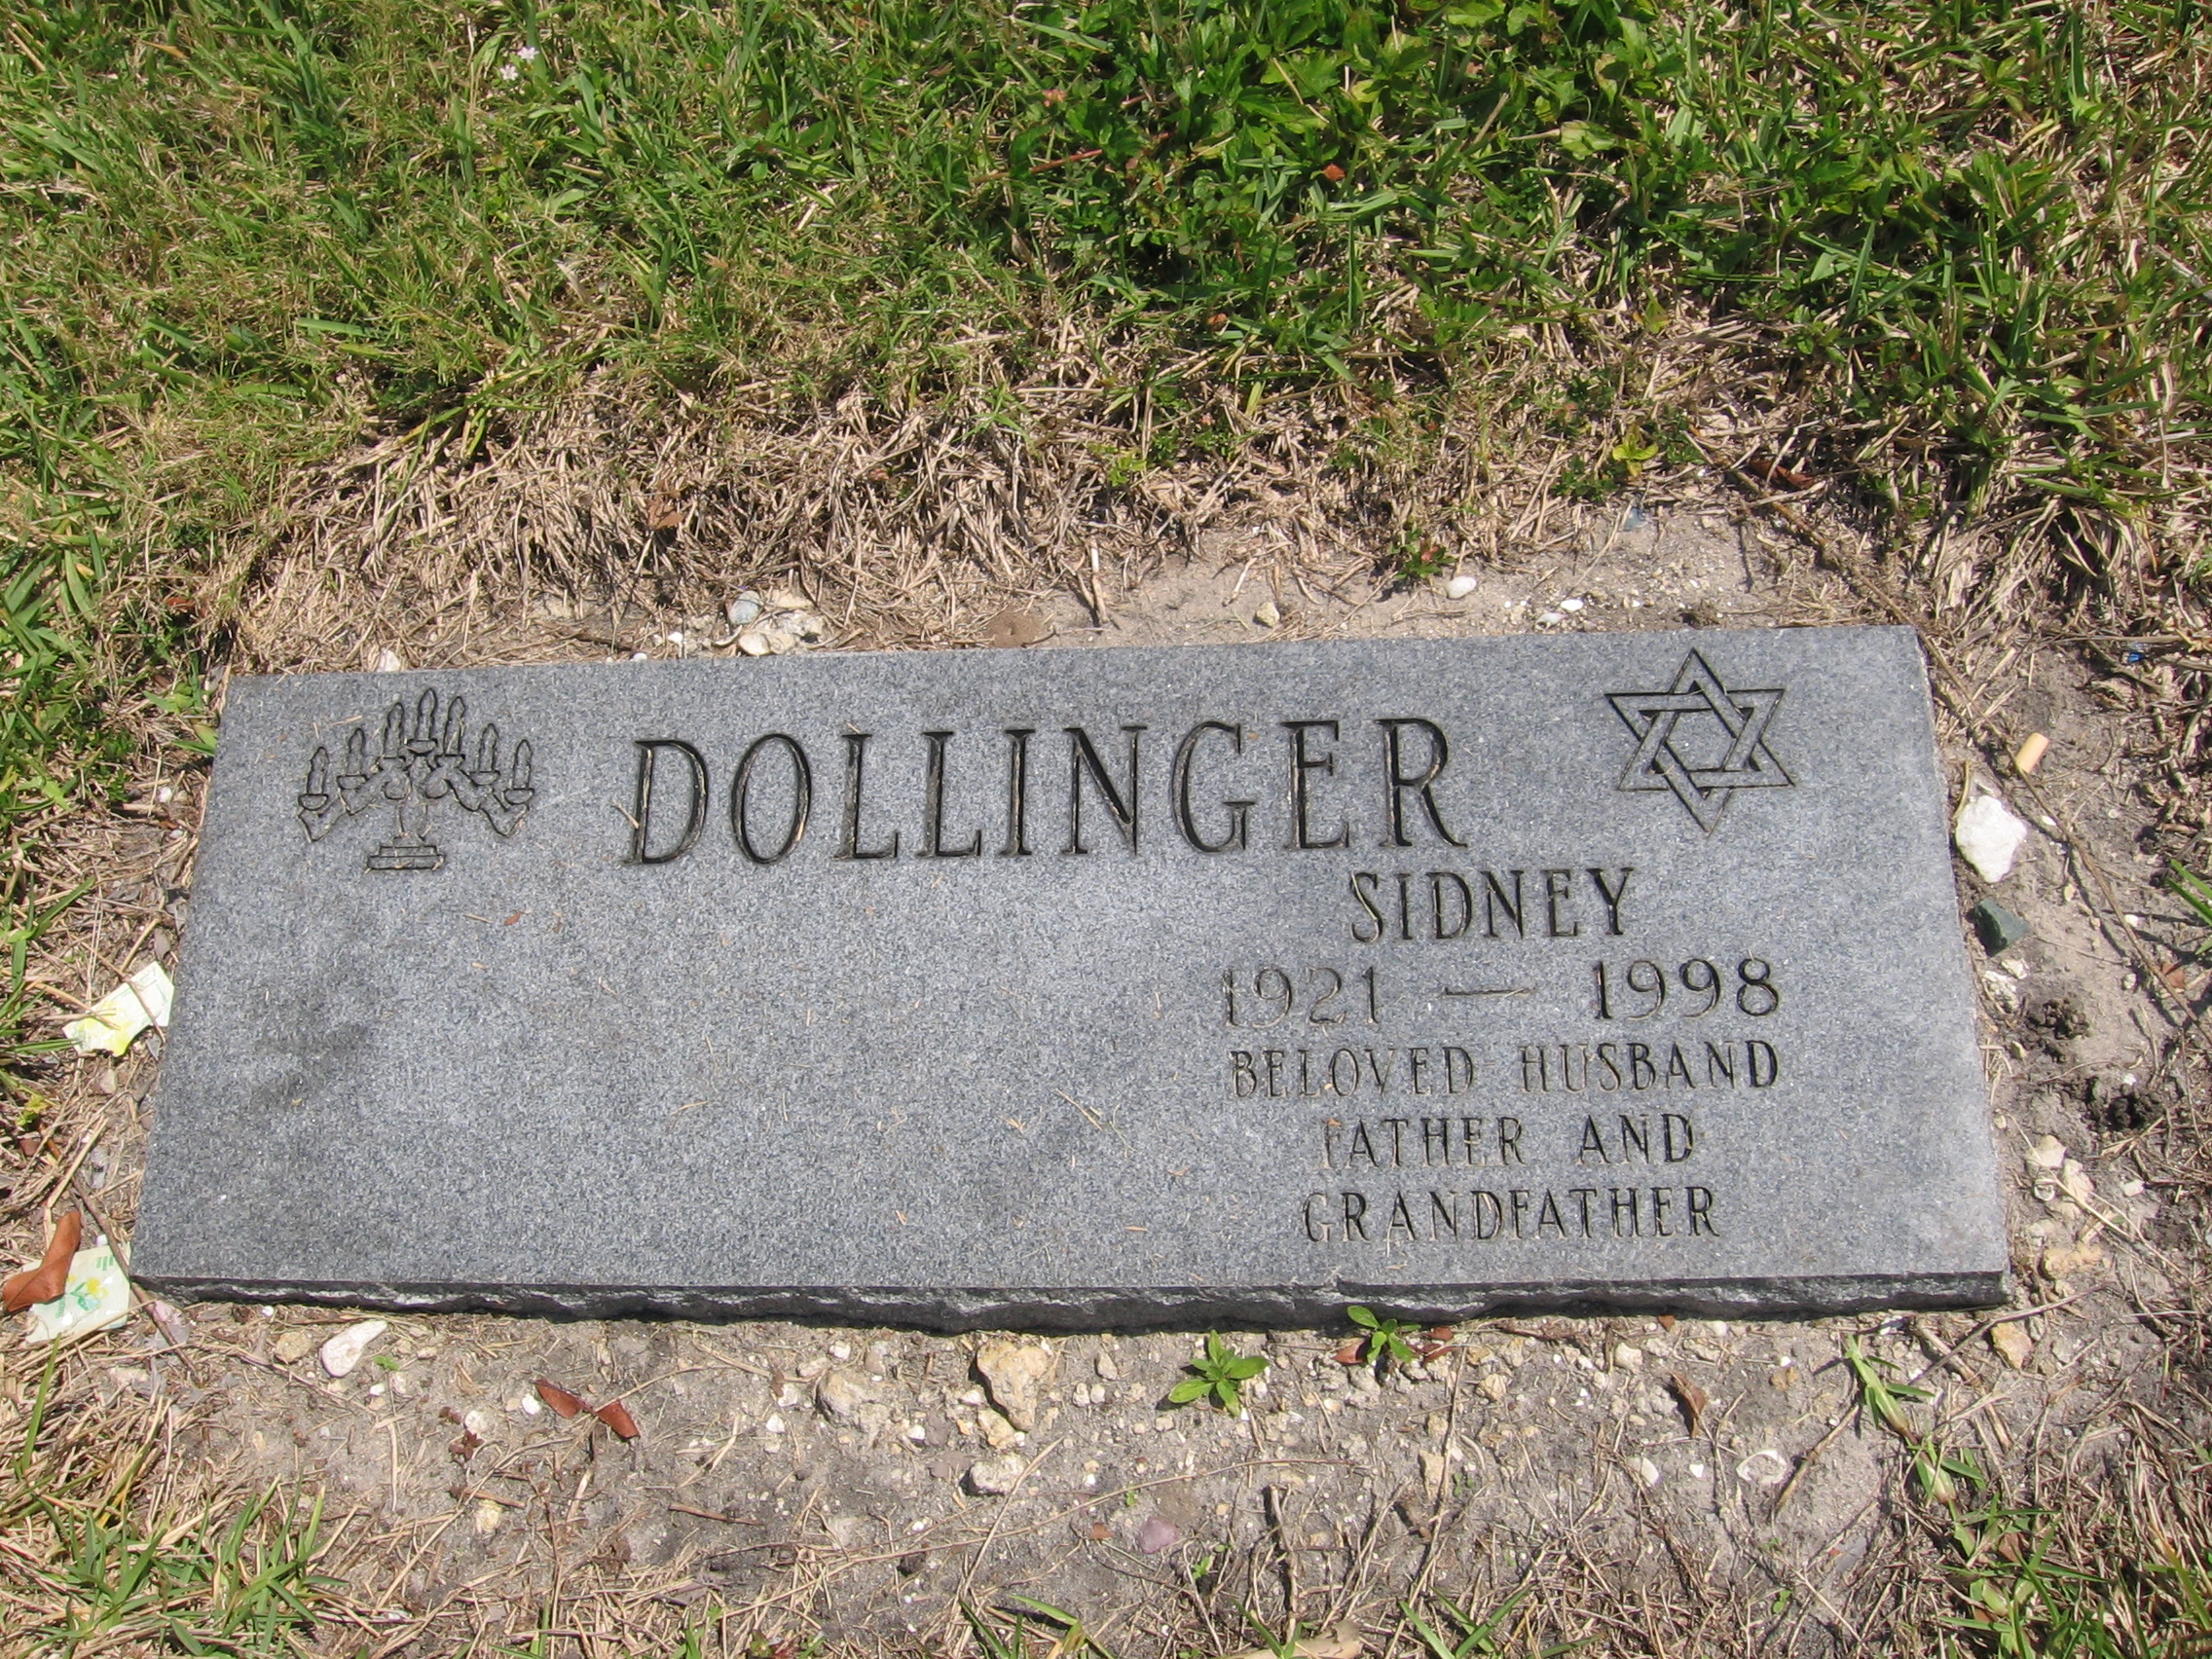 Sidney Dollinger